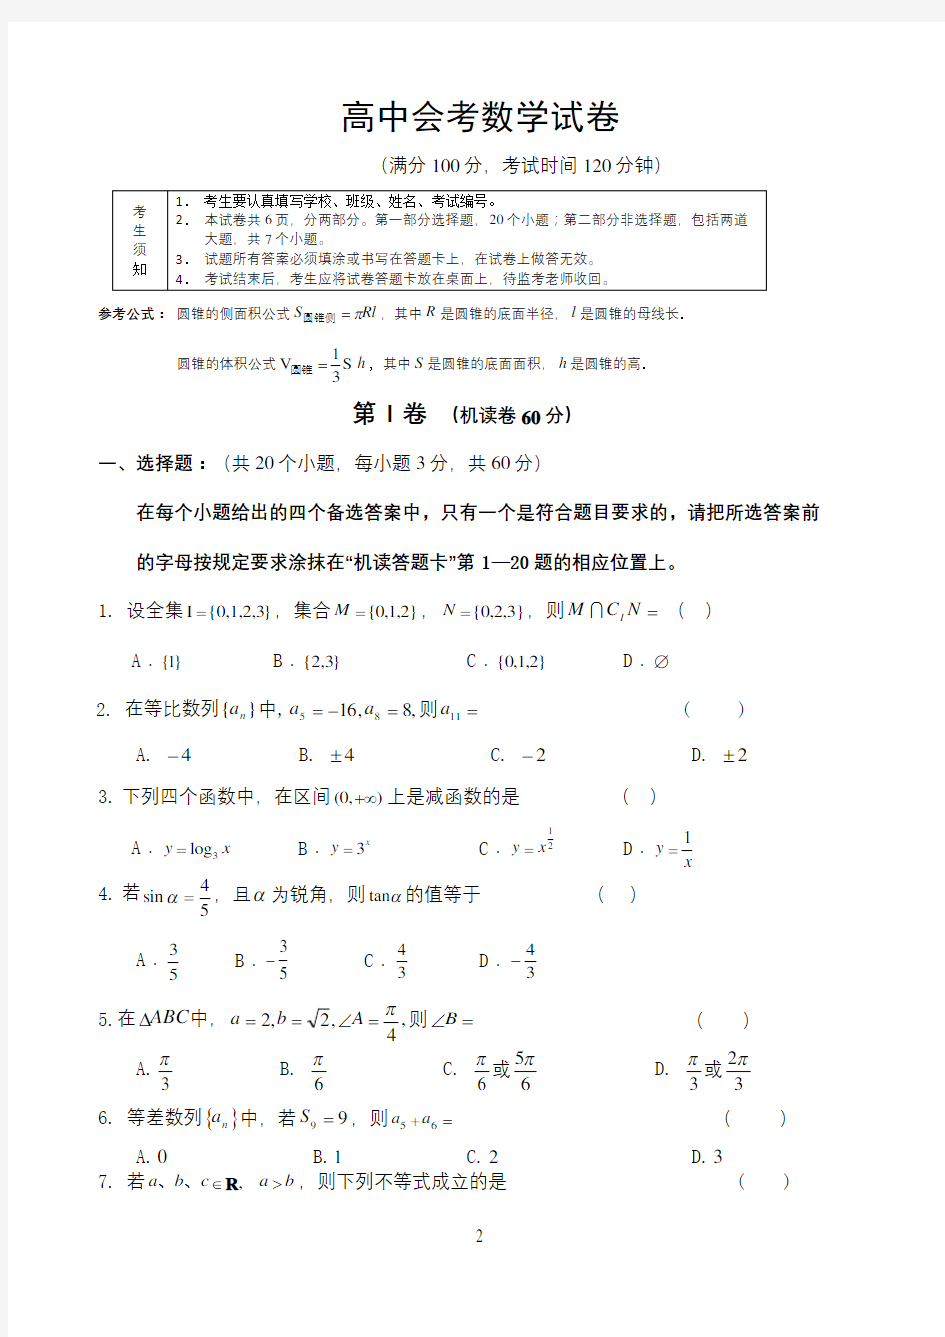 高中会考数学试卷(标准的)